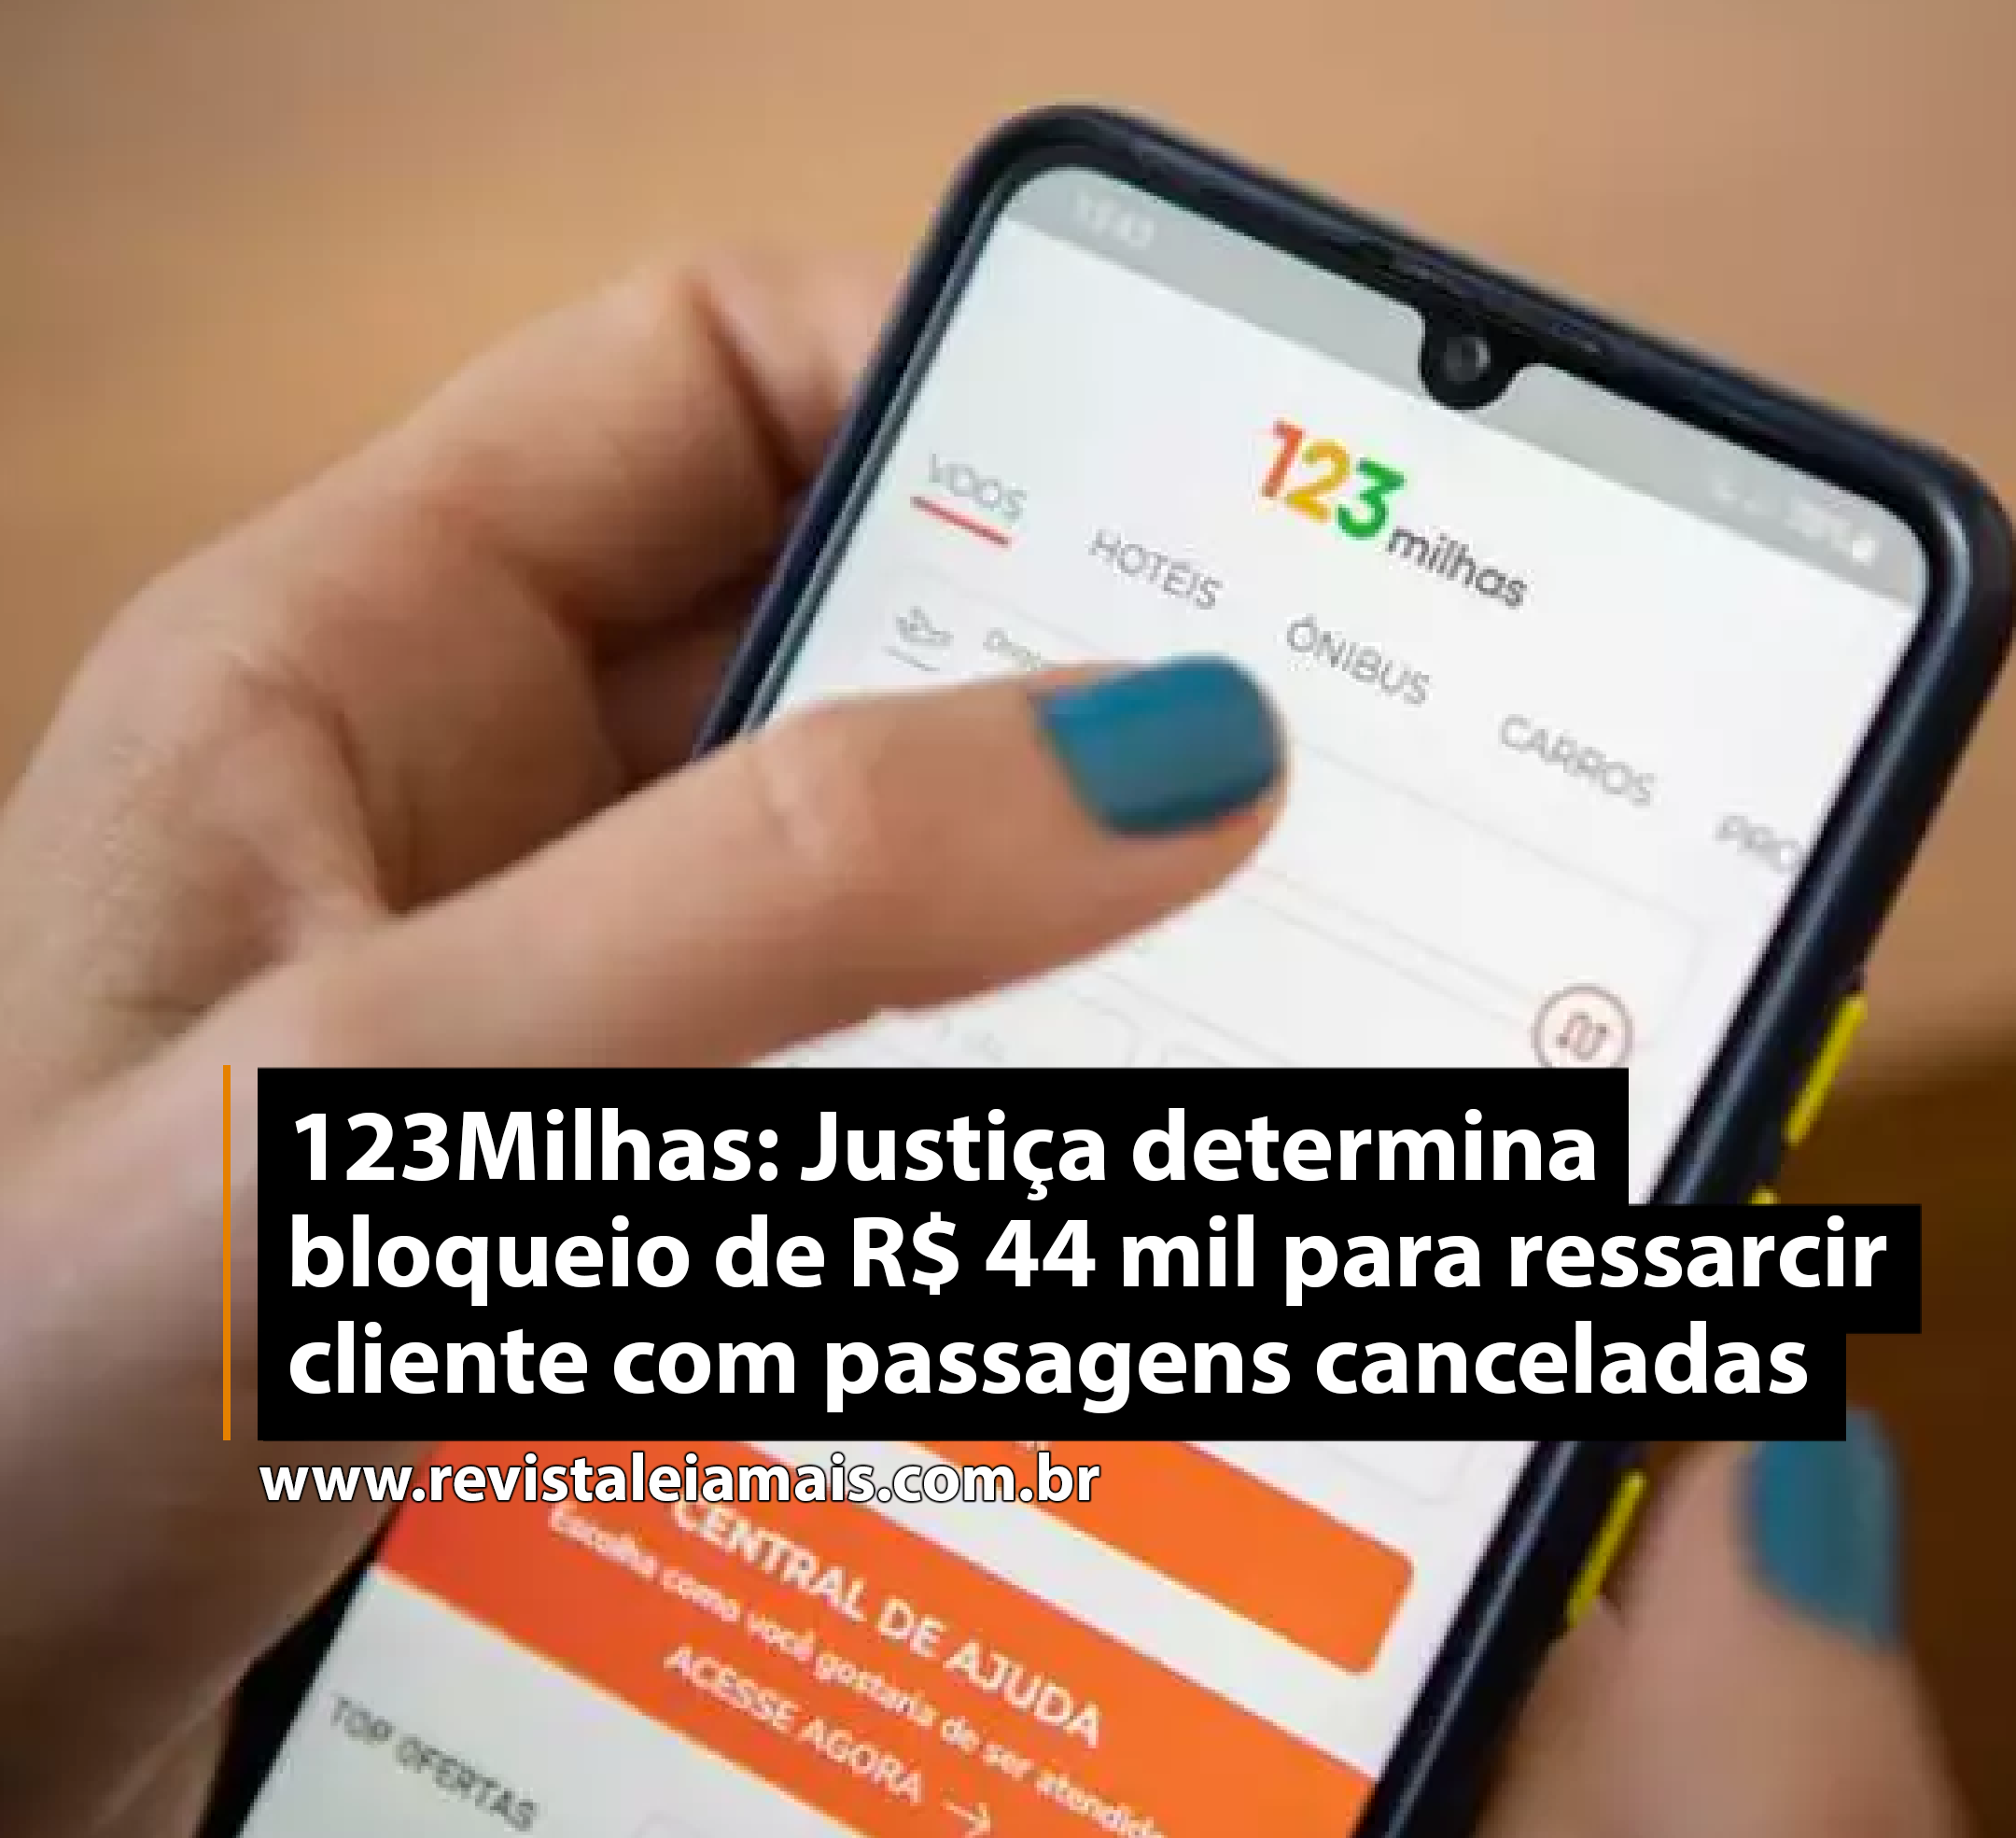 123Milhas: Justiça determina bloqueio de R$ 44 mil para ressarcir cliente com passagens canceladas